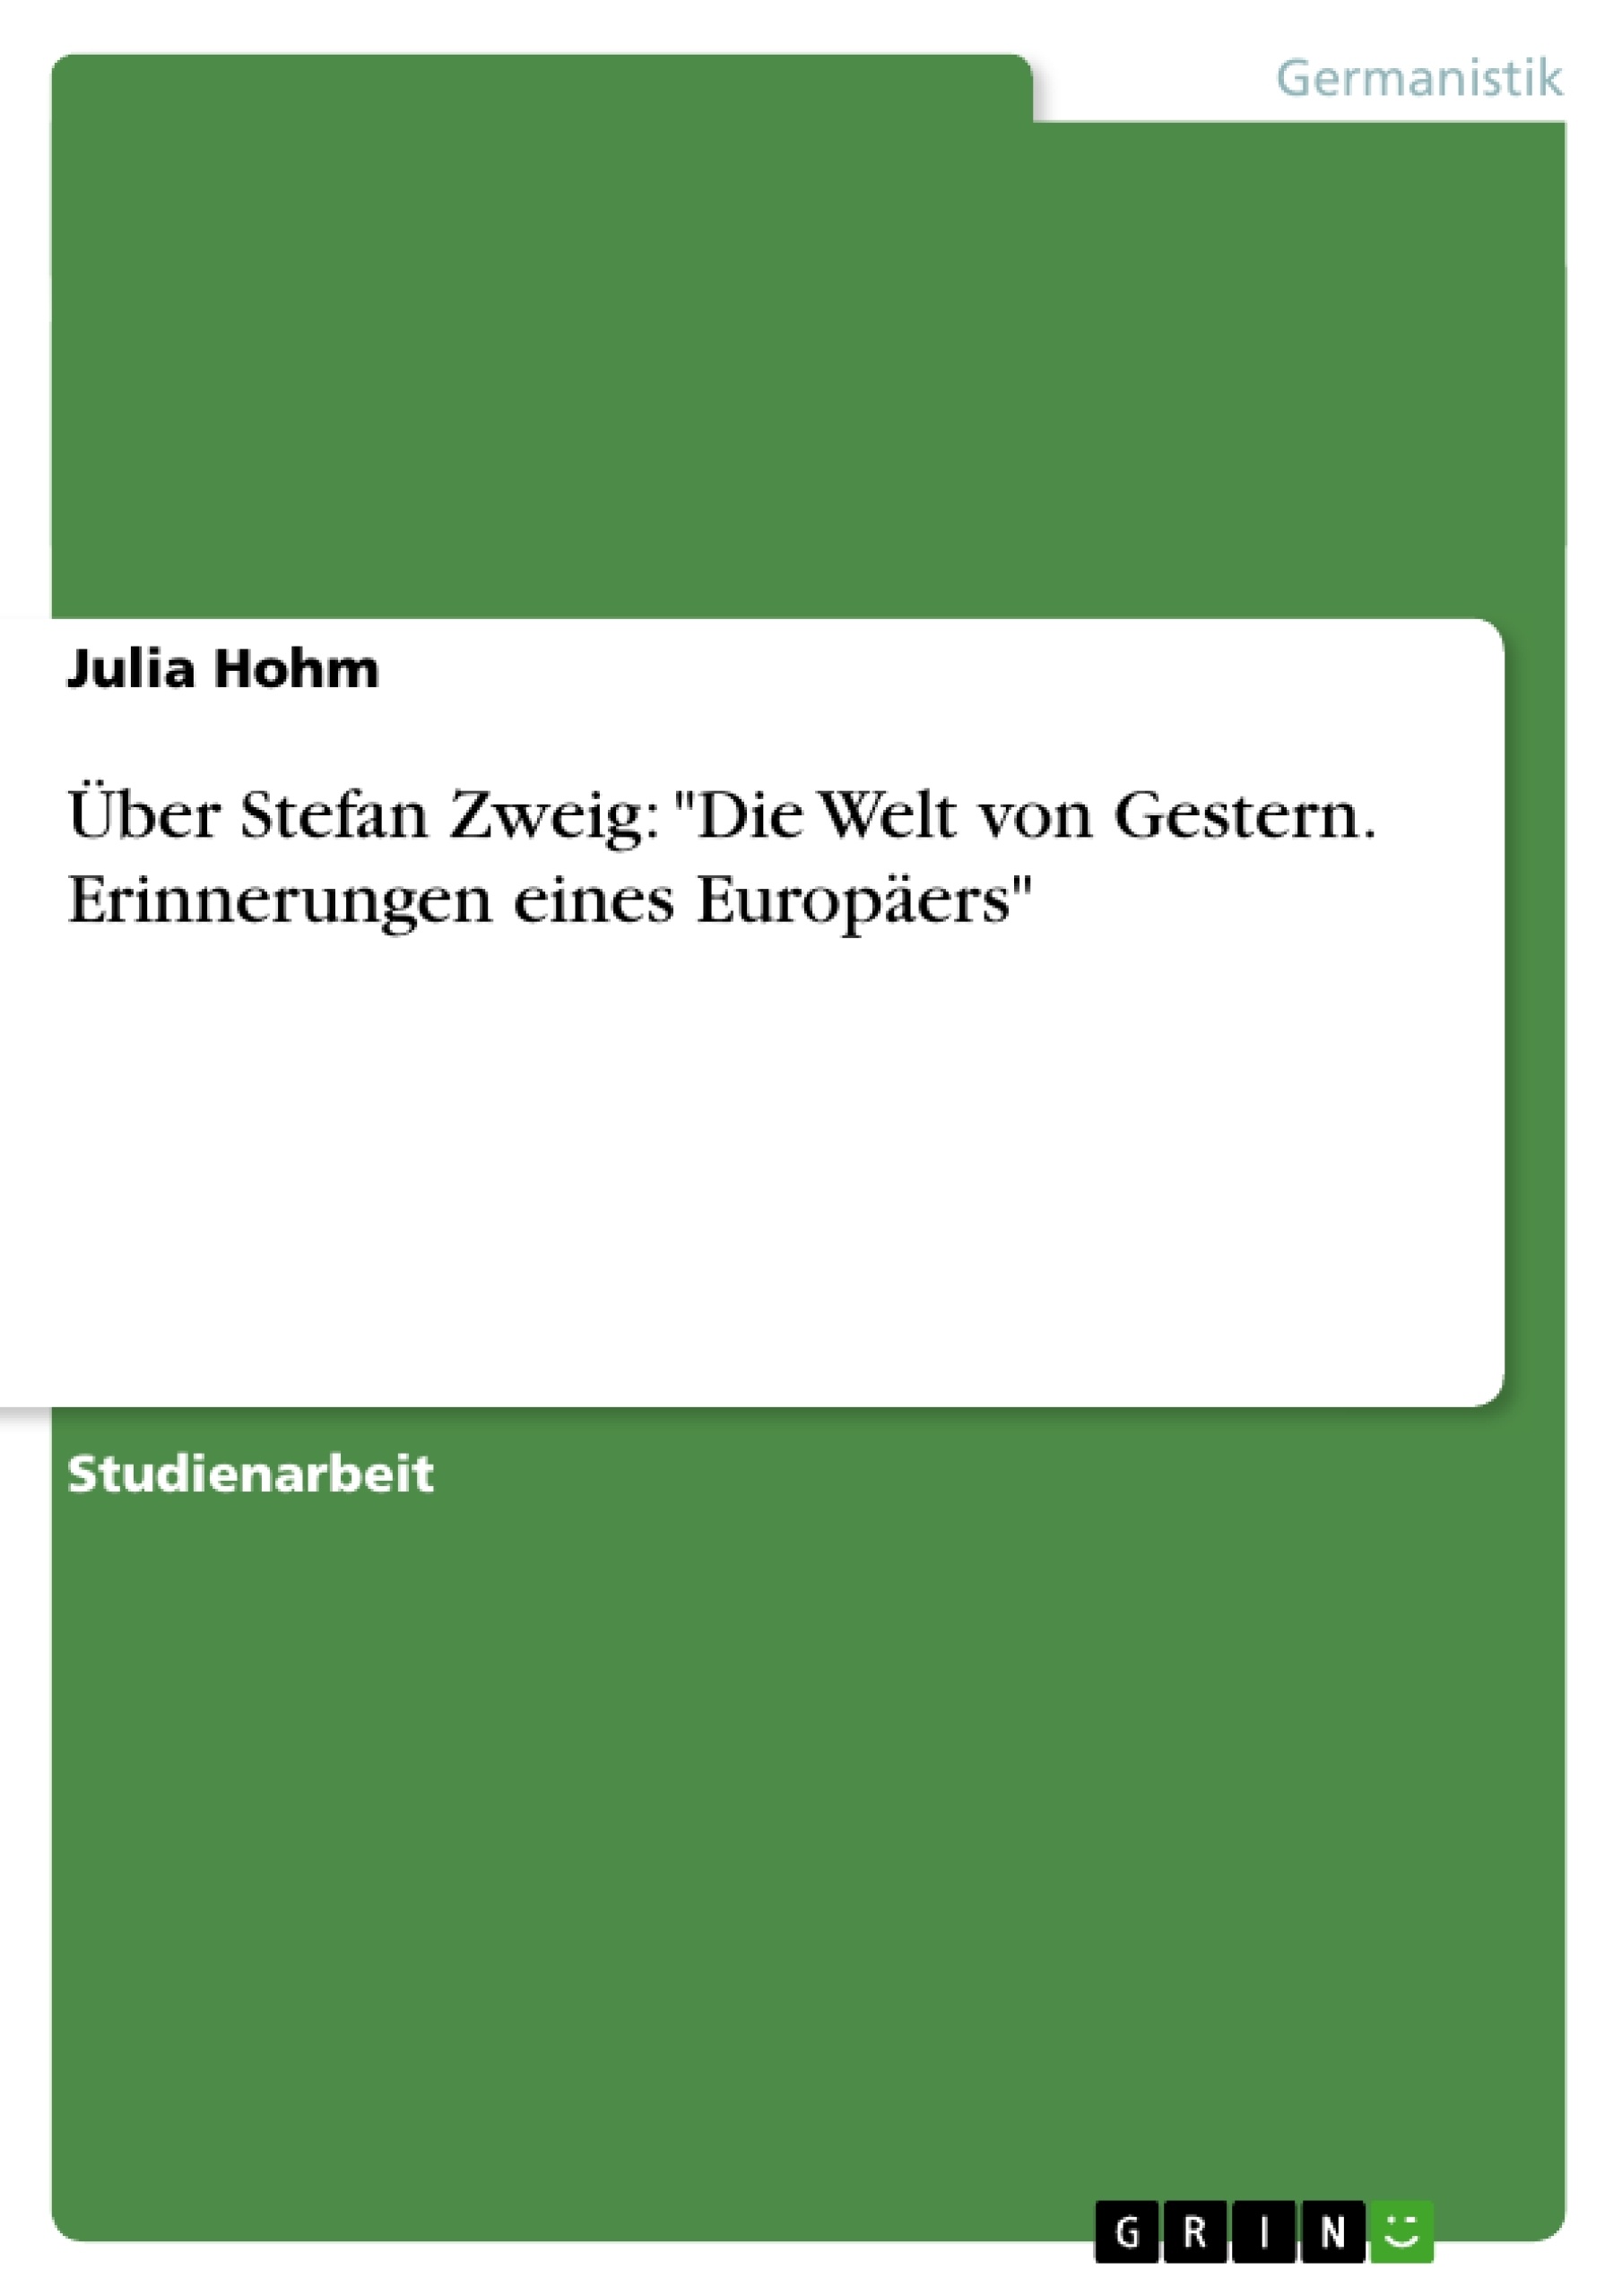 Title: Über Stefan Zweig: "Die Welt von Gestern. Erinnerungen eines Europäers"